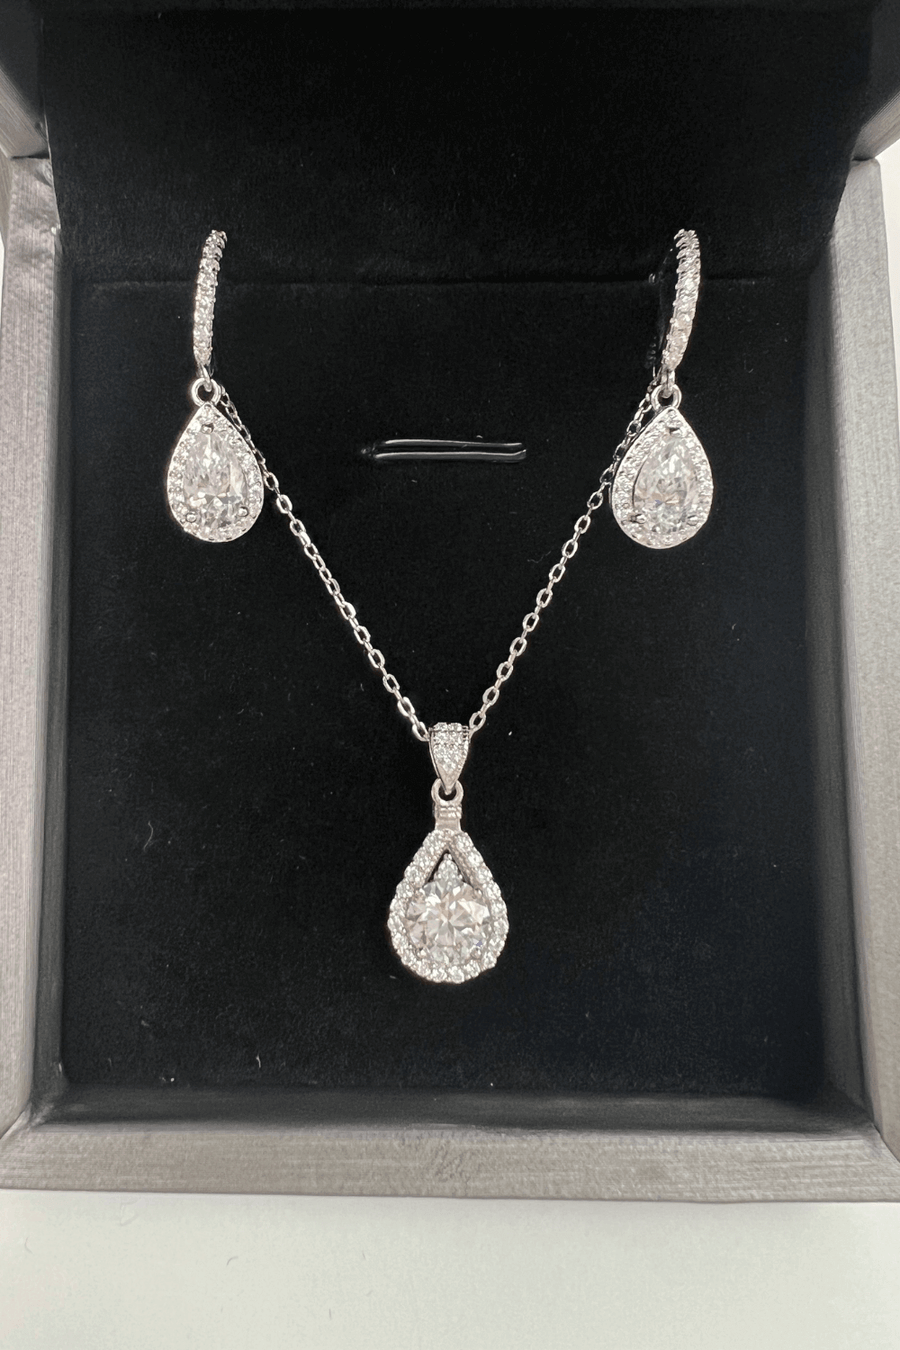 Best Diamond Jewelry Bundle Set Gift | Best Teardrop Pear Diamond Necklace, Earrings Jewelry Gift for Women, Mother, Wife, Daughter | MASON New York